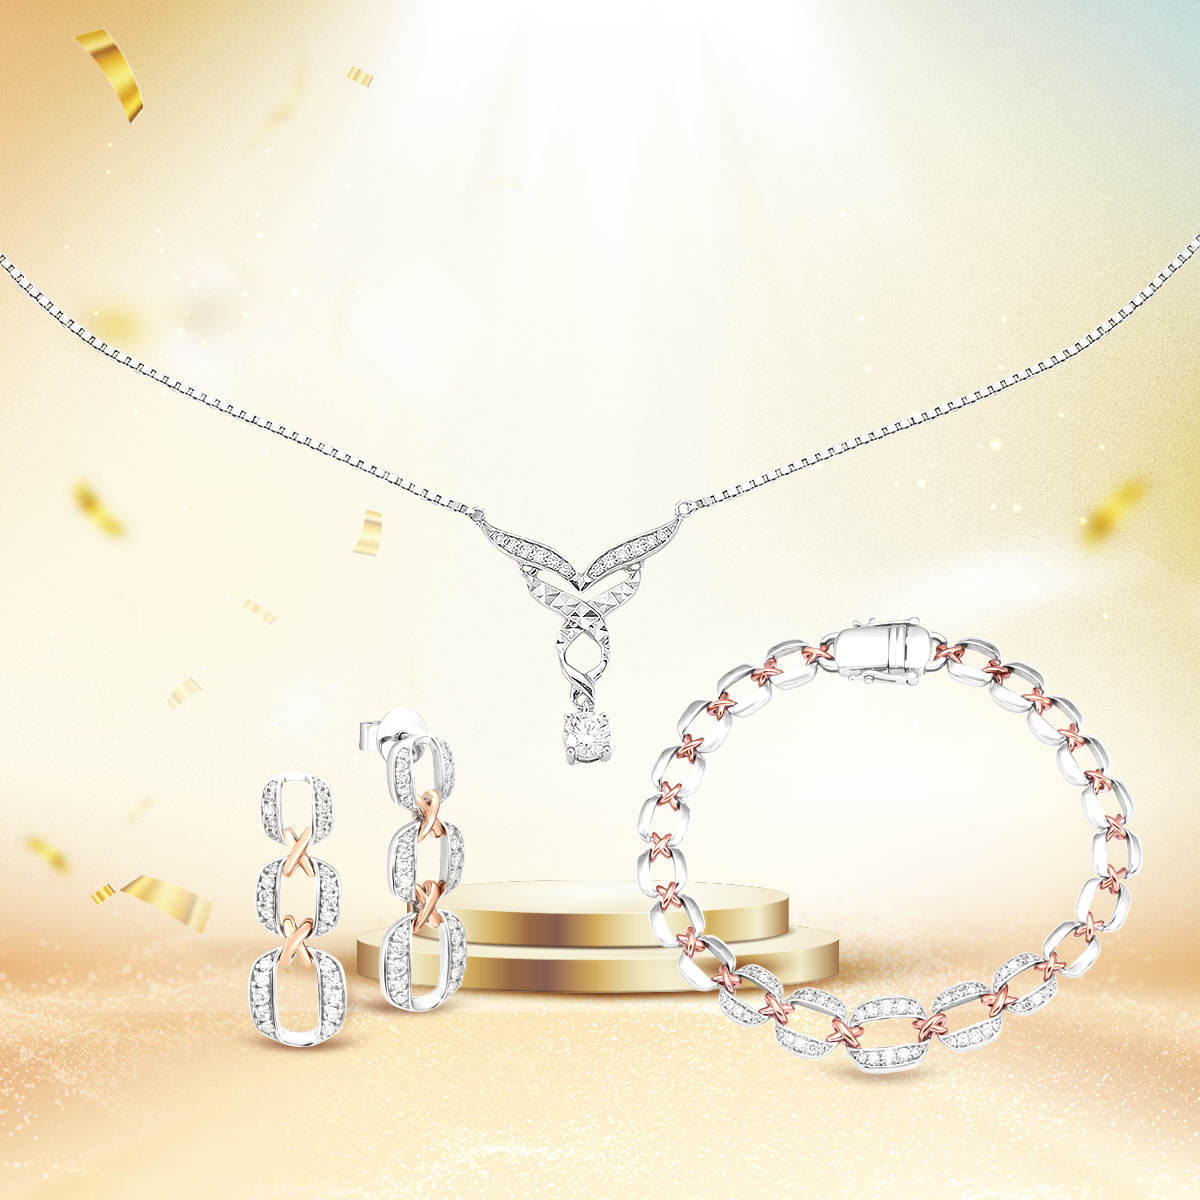 Bộ trang sức Timeless Diamond chính là món quà đặc biệt từ PNJ dành tặng khách hàng, với hy vọng có thể lan tỏa cảm hứng và tạo động lực để mỗi người thêm tự tin và tiếp tục làm đẹp cho bản thân, cuộc sống và xã hội.